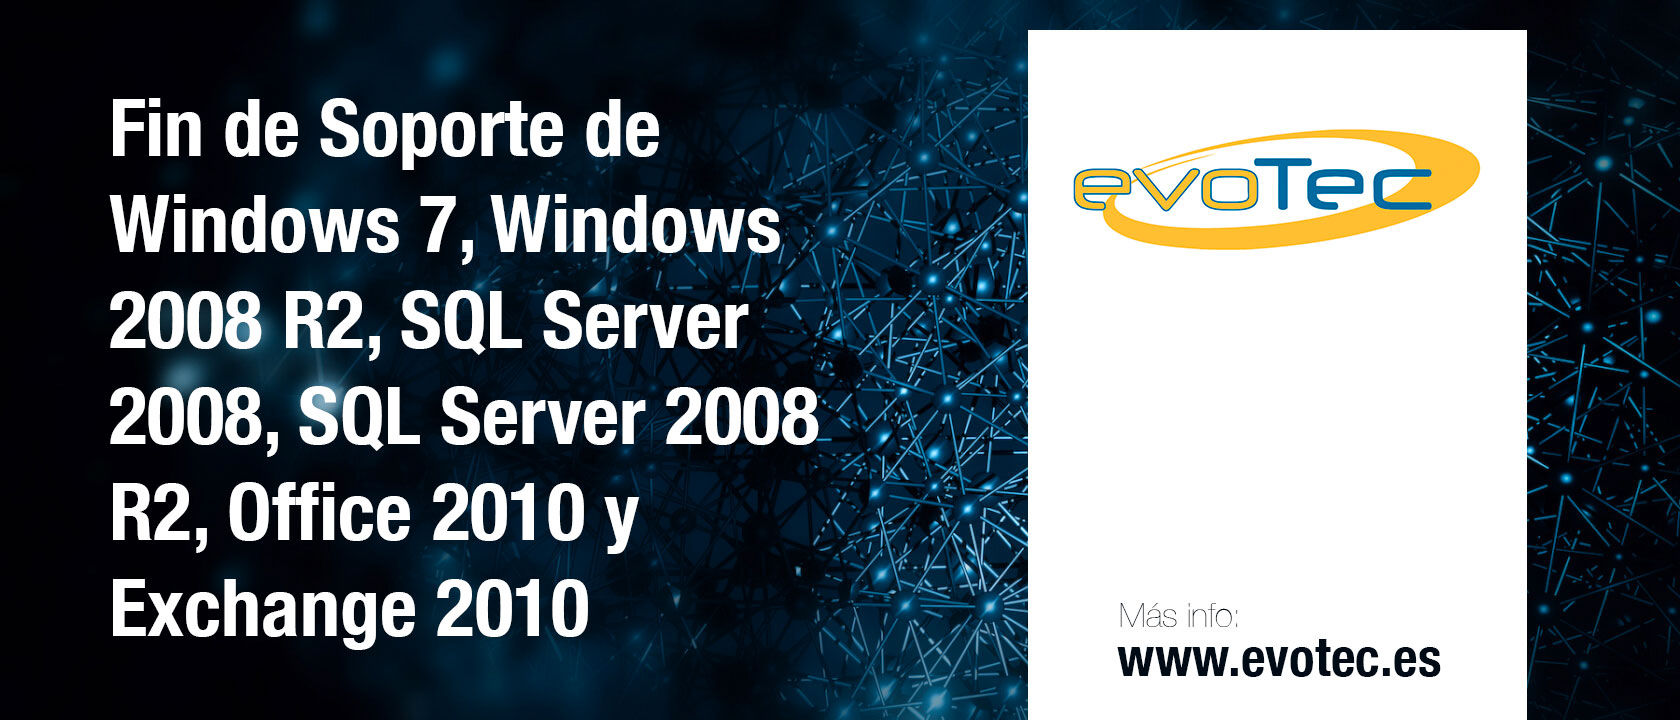 Fin de Soporte de Windows 7, Windows 2008 R2, SQL Server 2008, SQL Server 2008 R2, Office 2010 y Exchange 2010